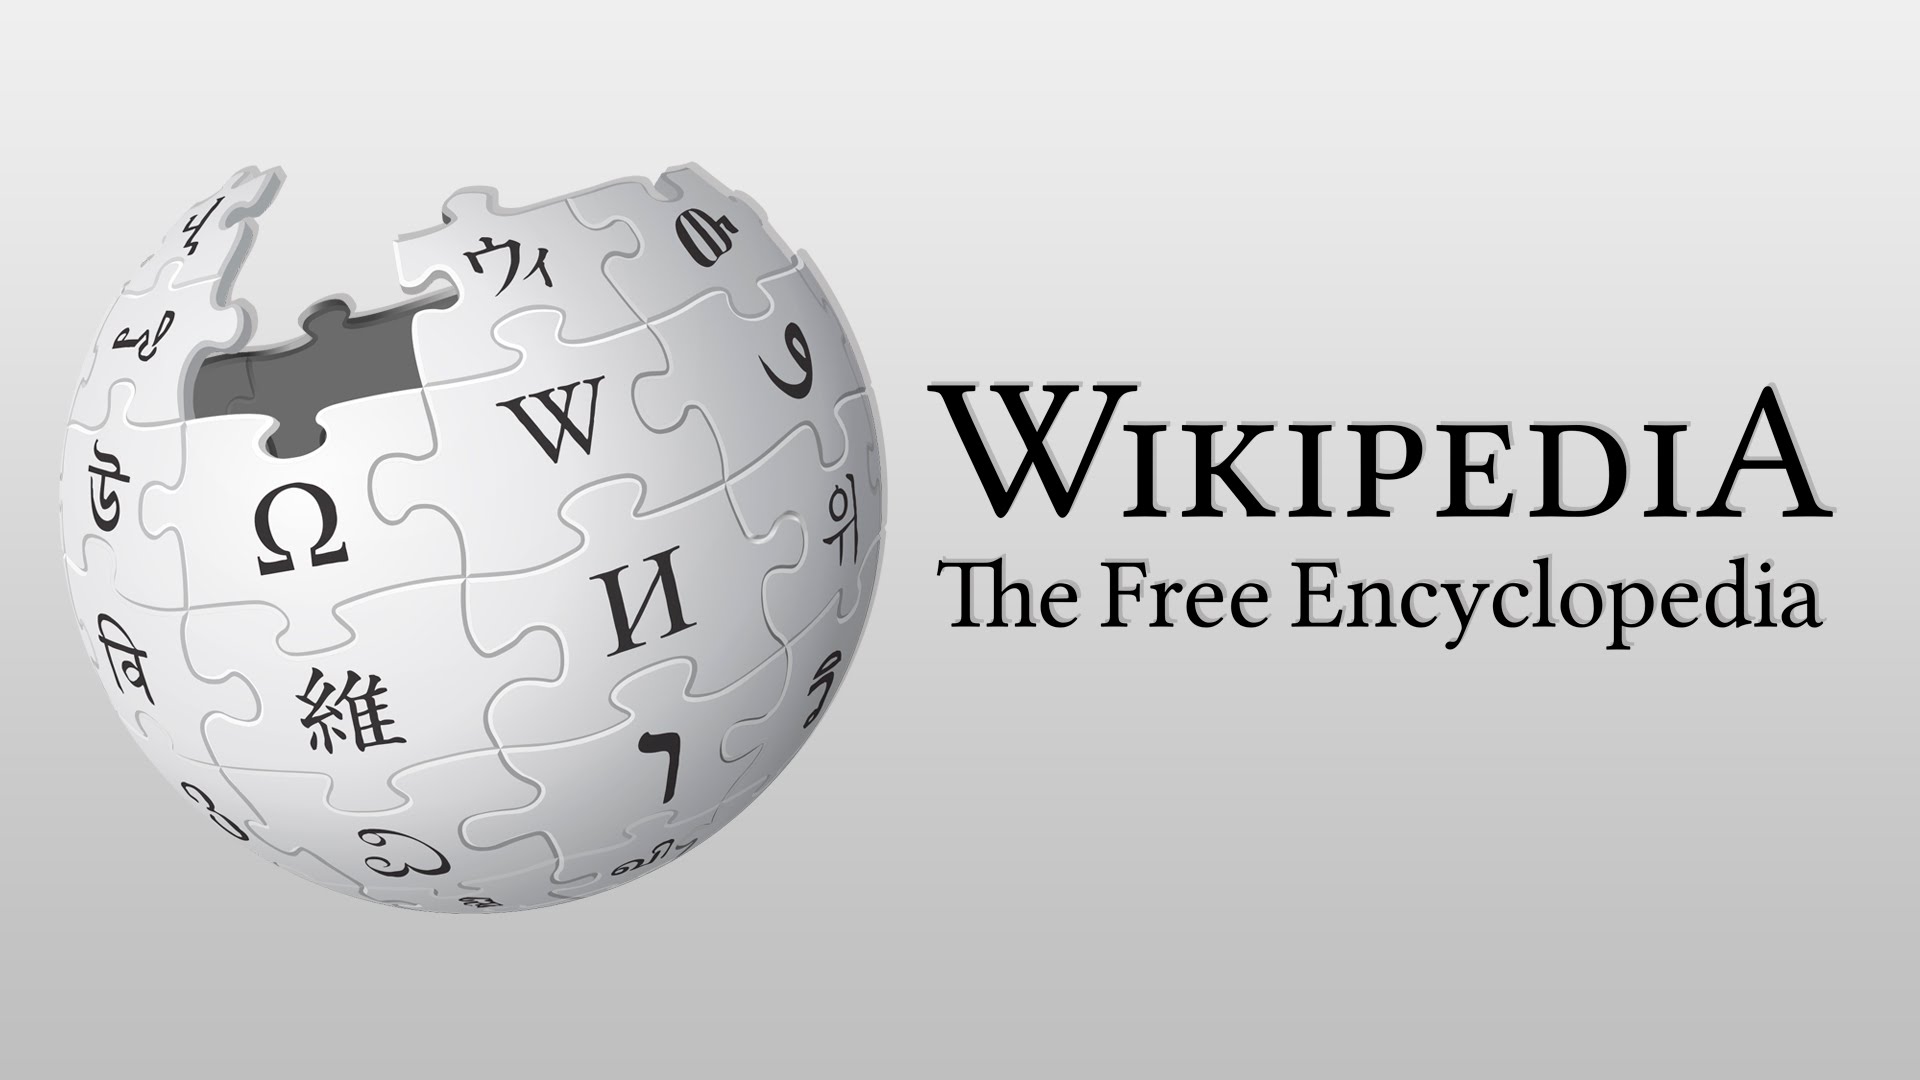 AYM kararı sonrası Wikipedia açılacak mı?